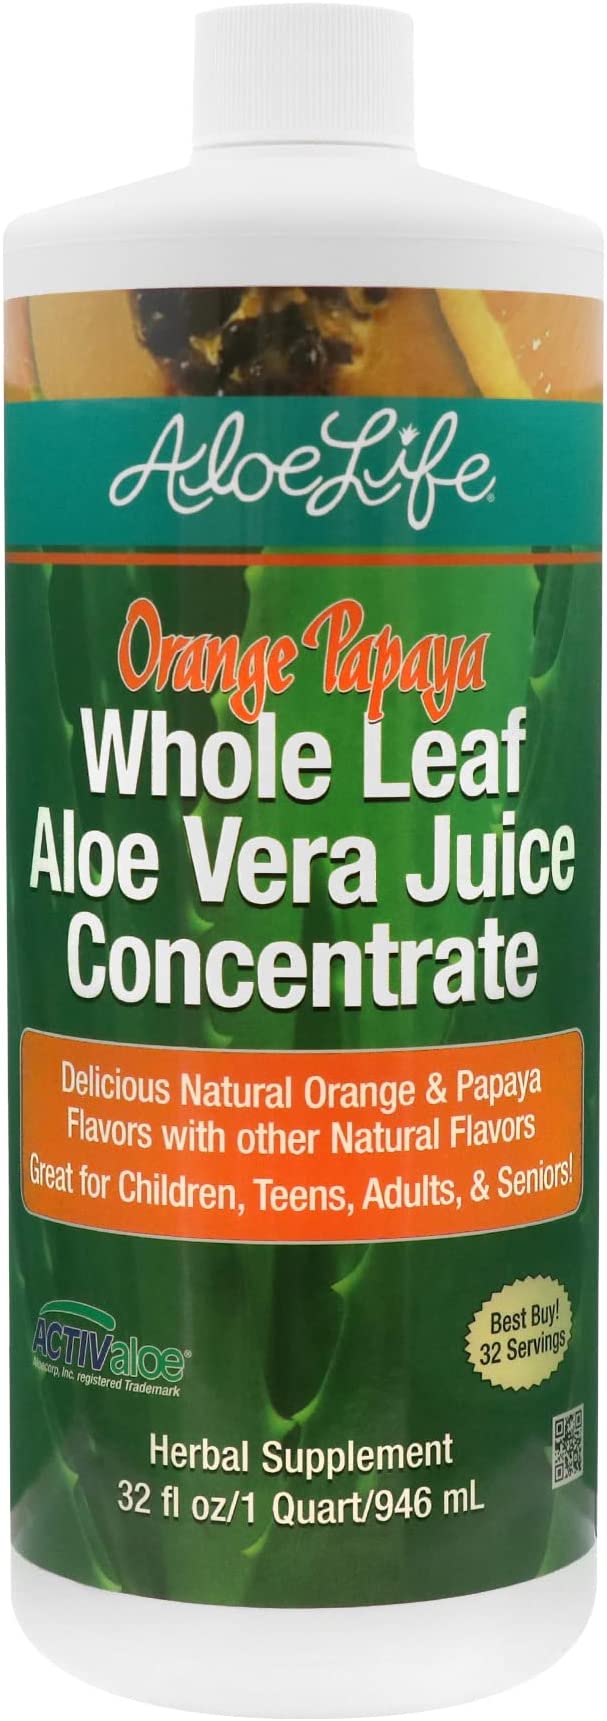 Whole Leaf Aloe Vera Juice Concentrate